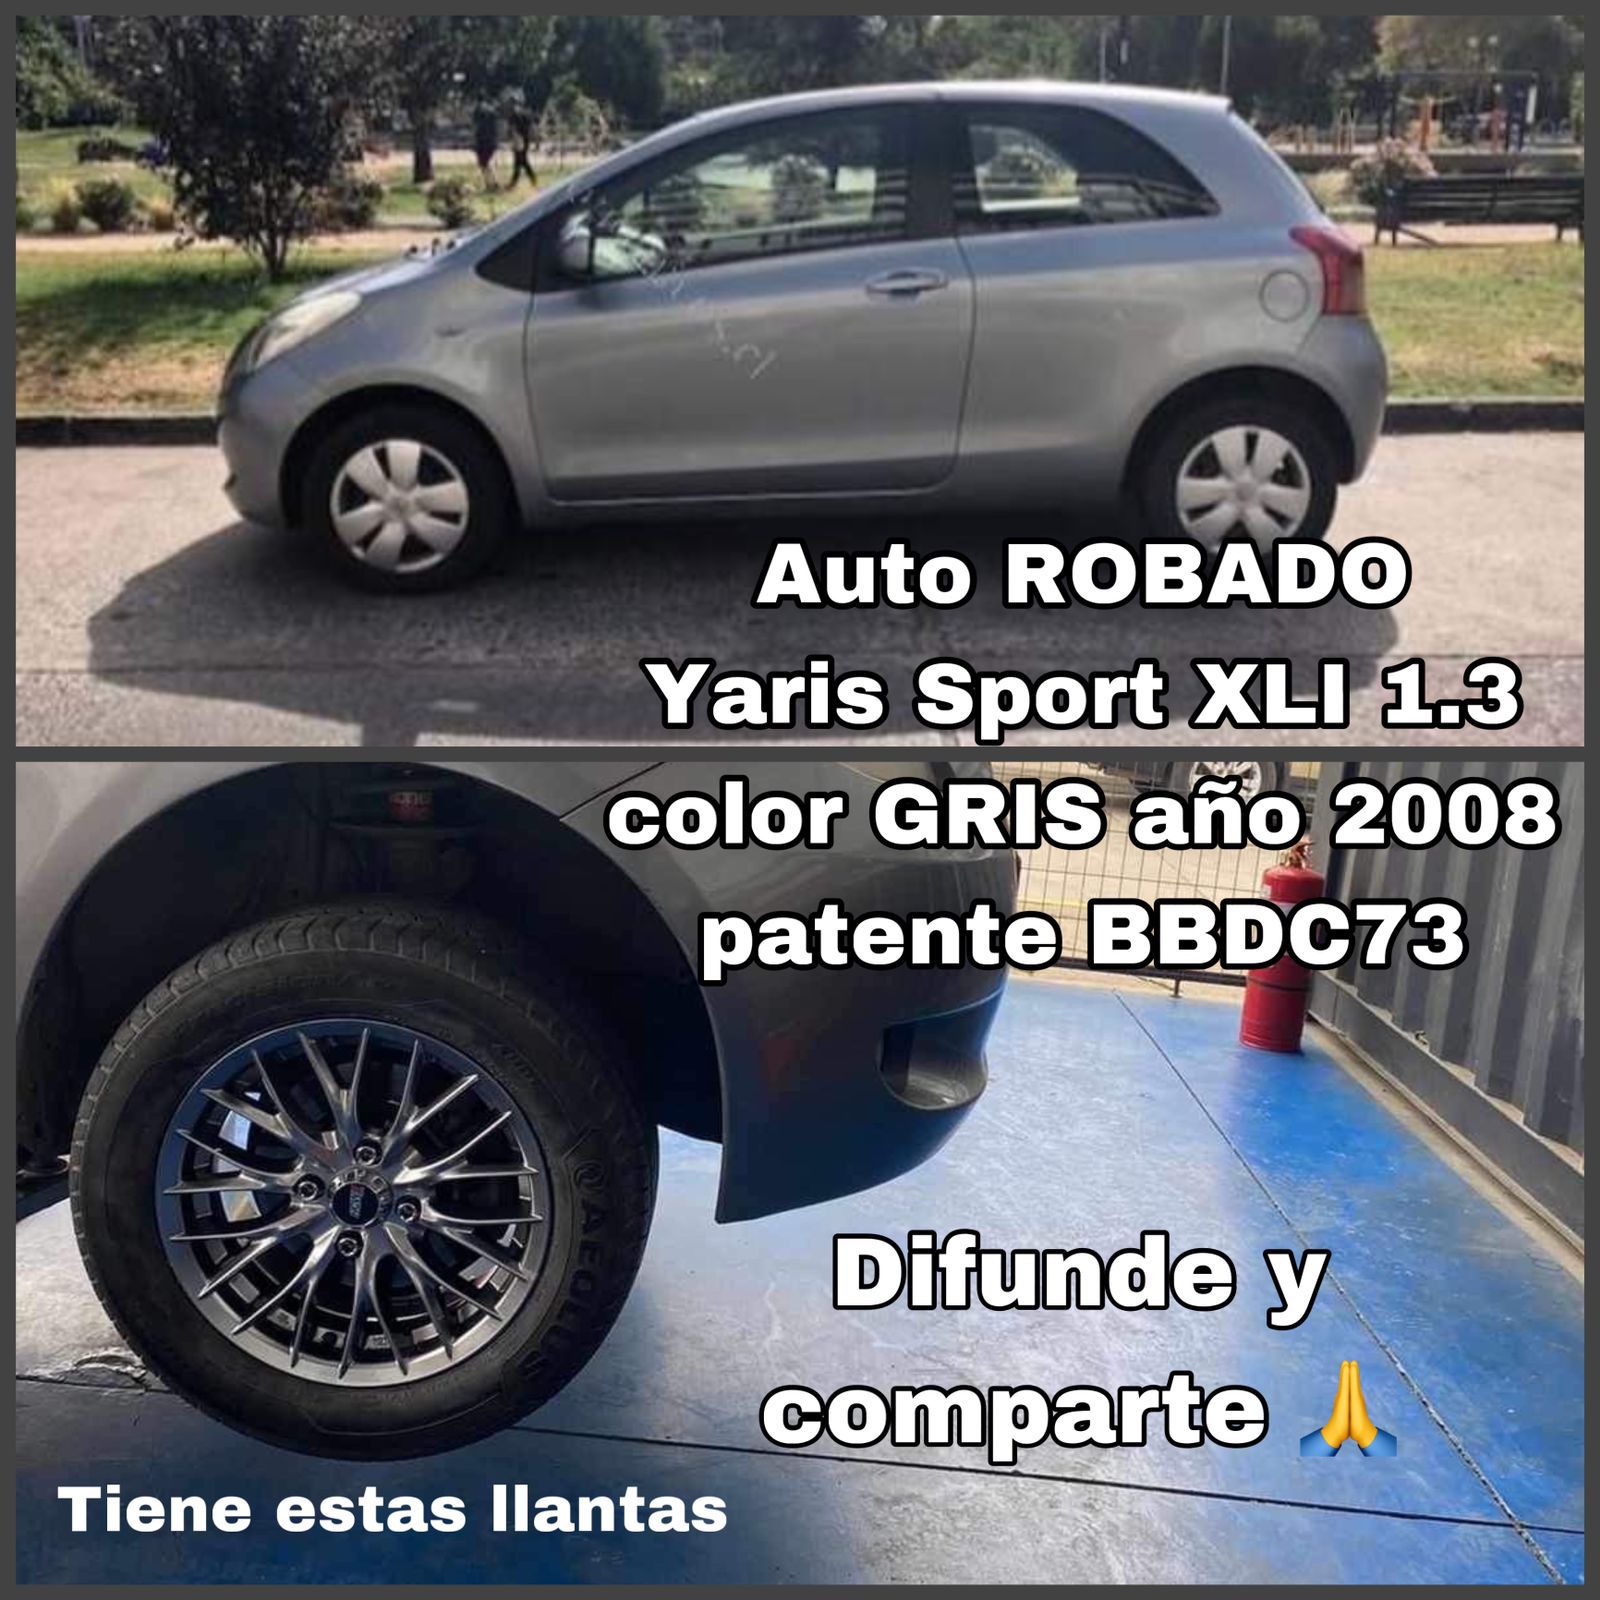 El otro vehículo es un Toyota Yaris Sport XLi, modelo 2008, color gris, placa patente BBDC73.